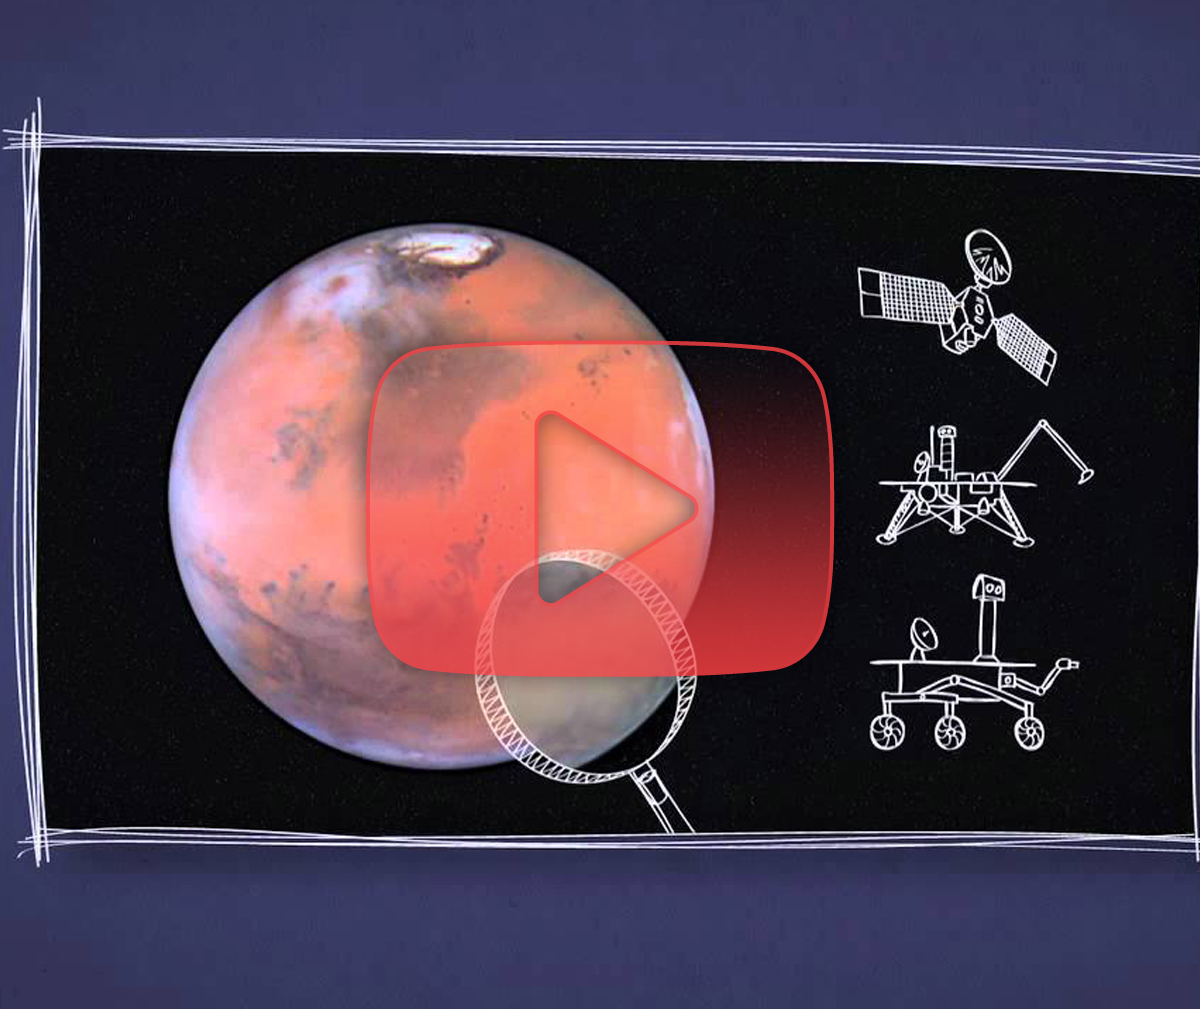 المريخ في دقيقة: هل المريخ حقاً أحمر؟